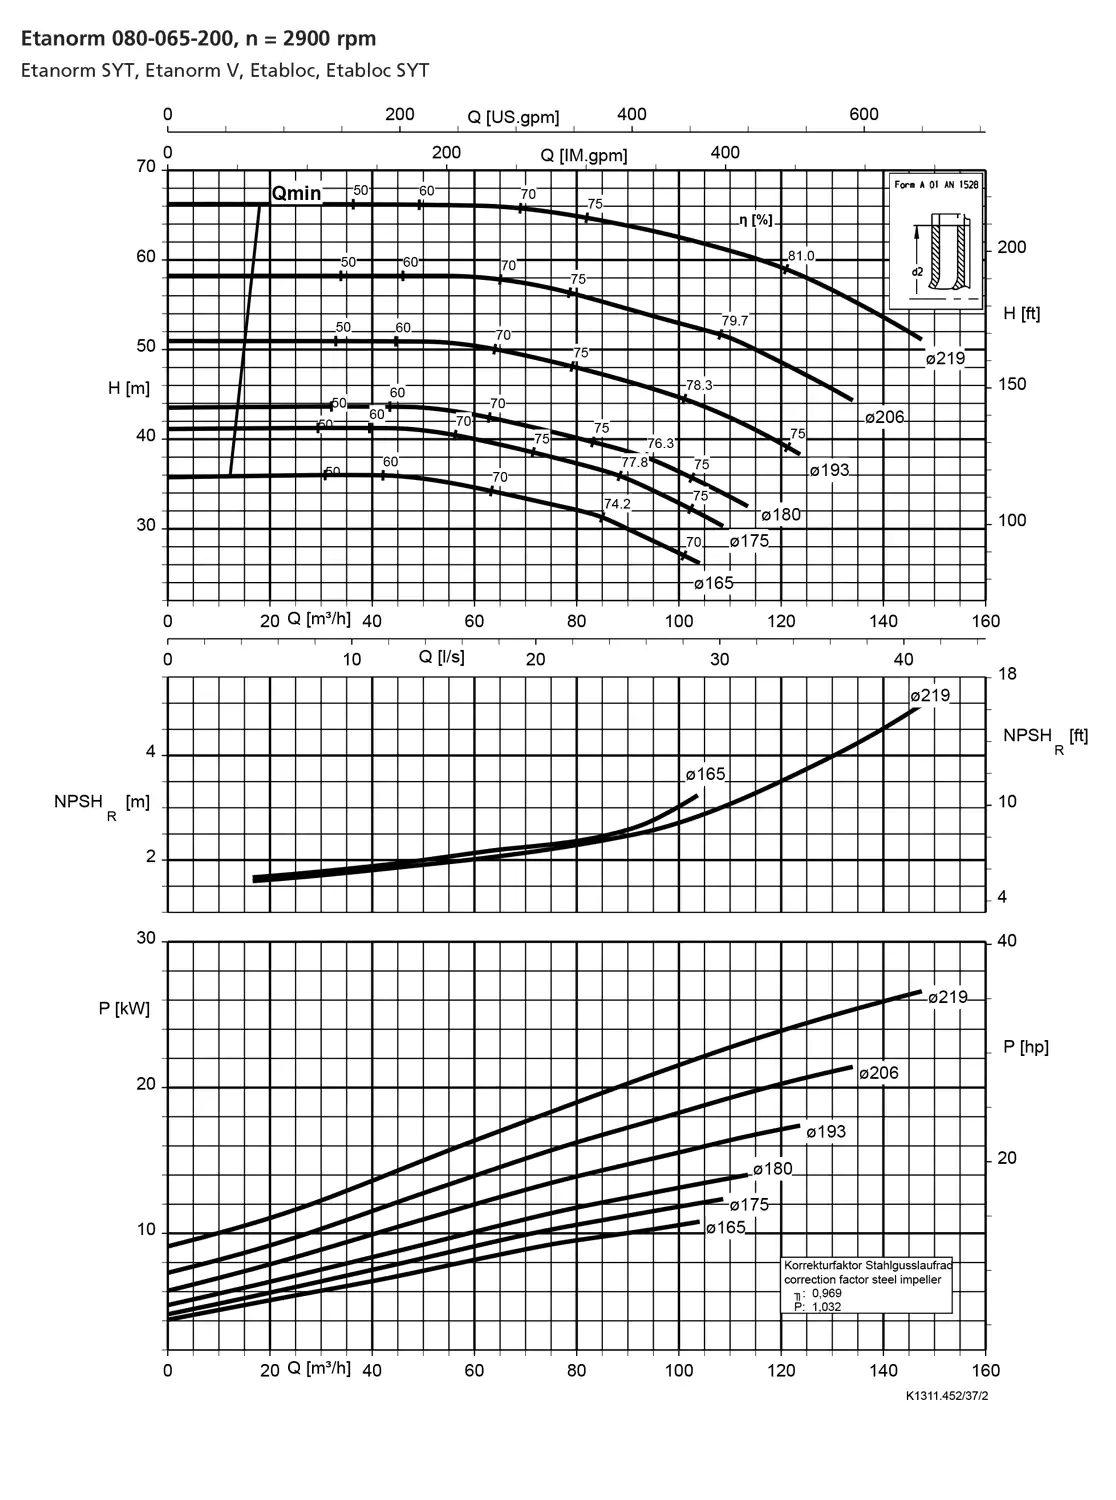 نمودار-کارکرد-پمپ-etanorm-80-065-200-2900